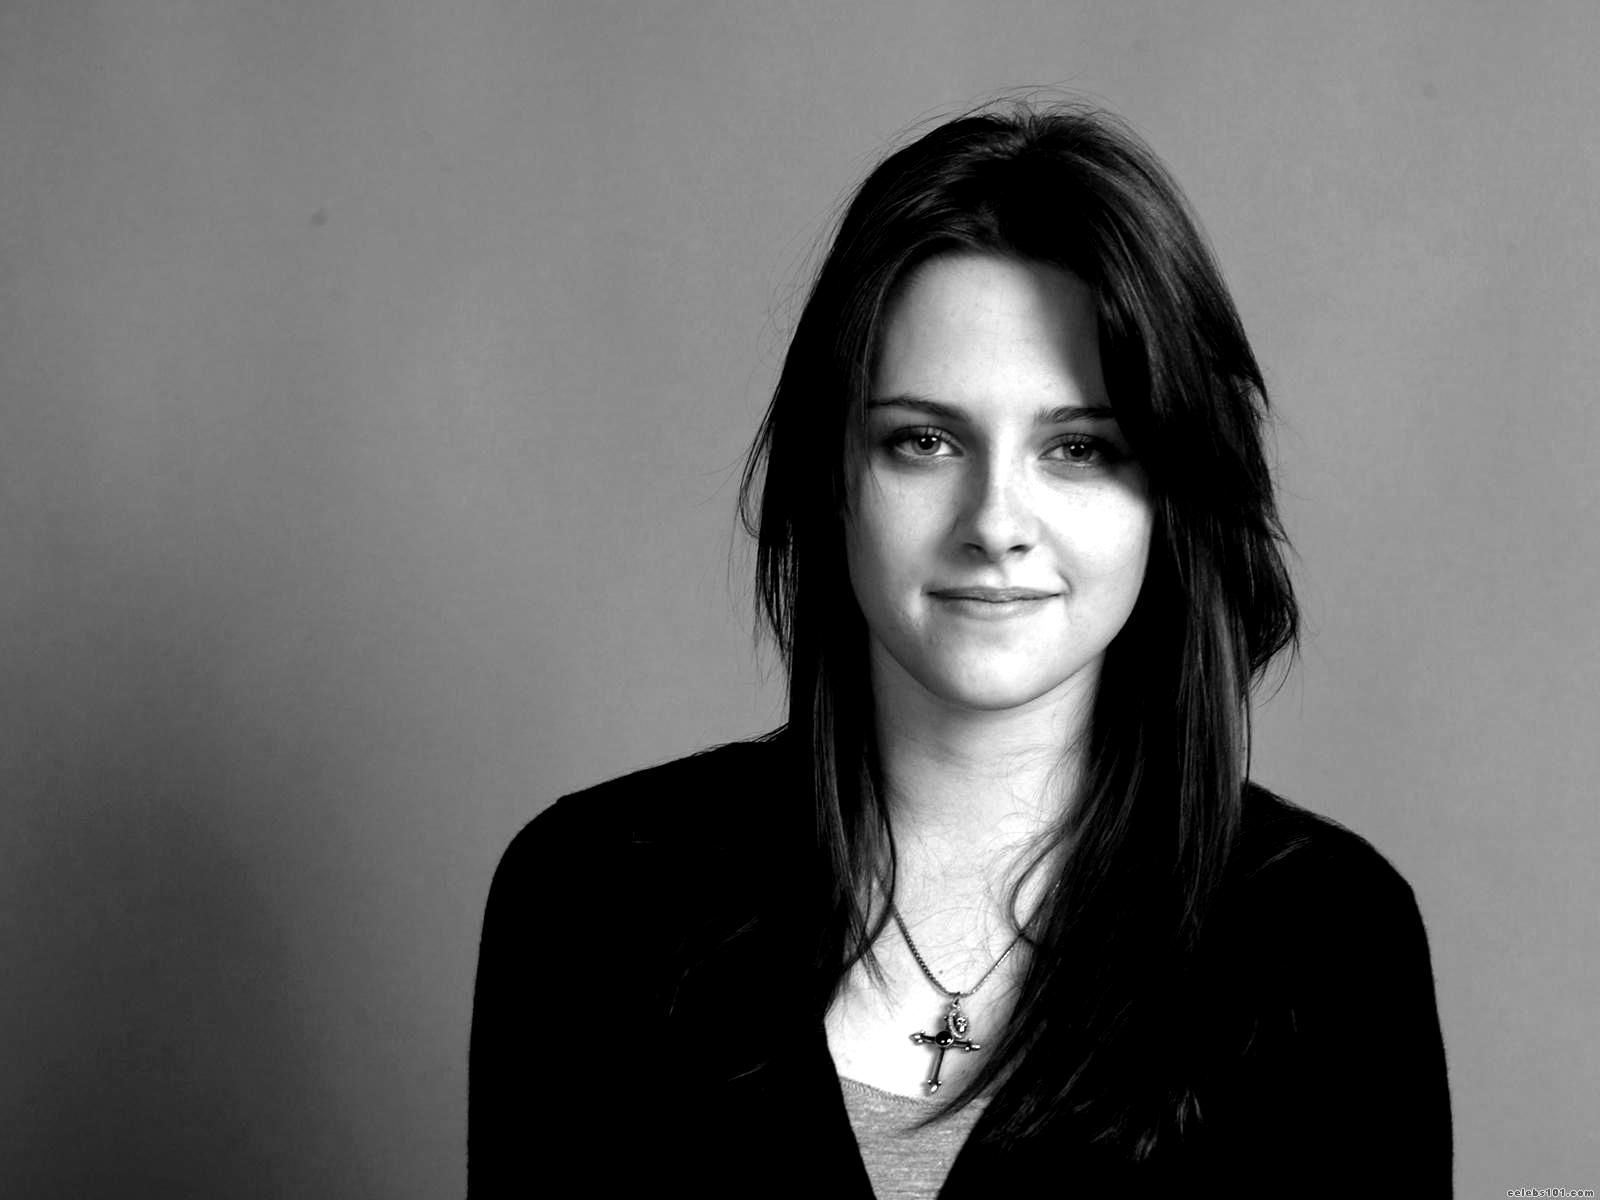 Kristen-Stewart-hot-black-and-white-wallpapers.jpg